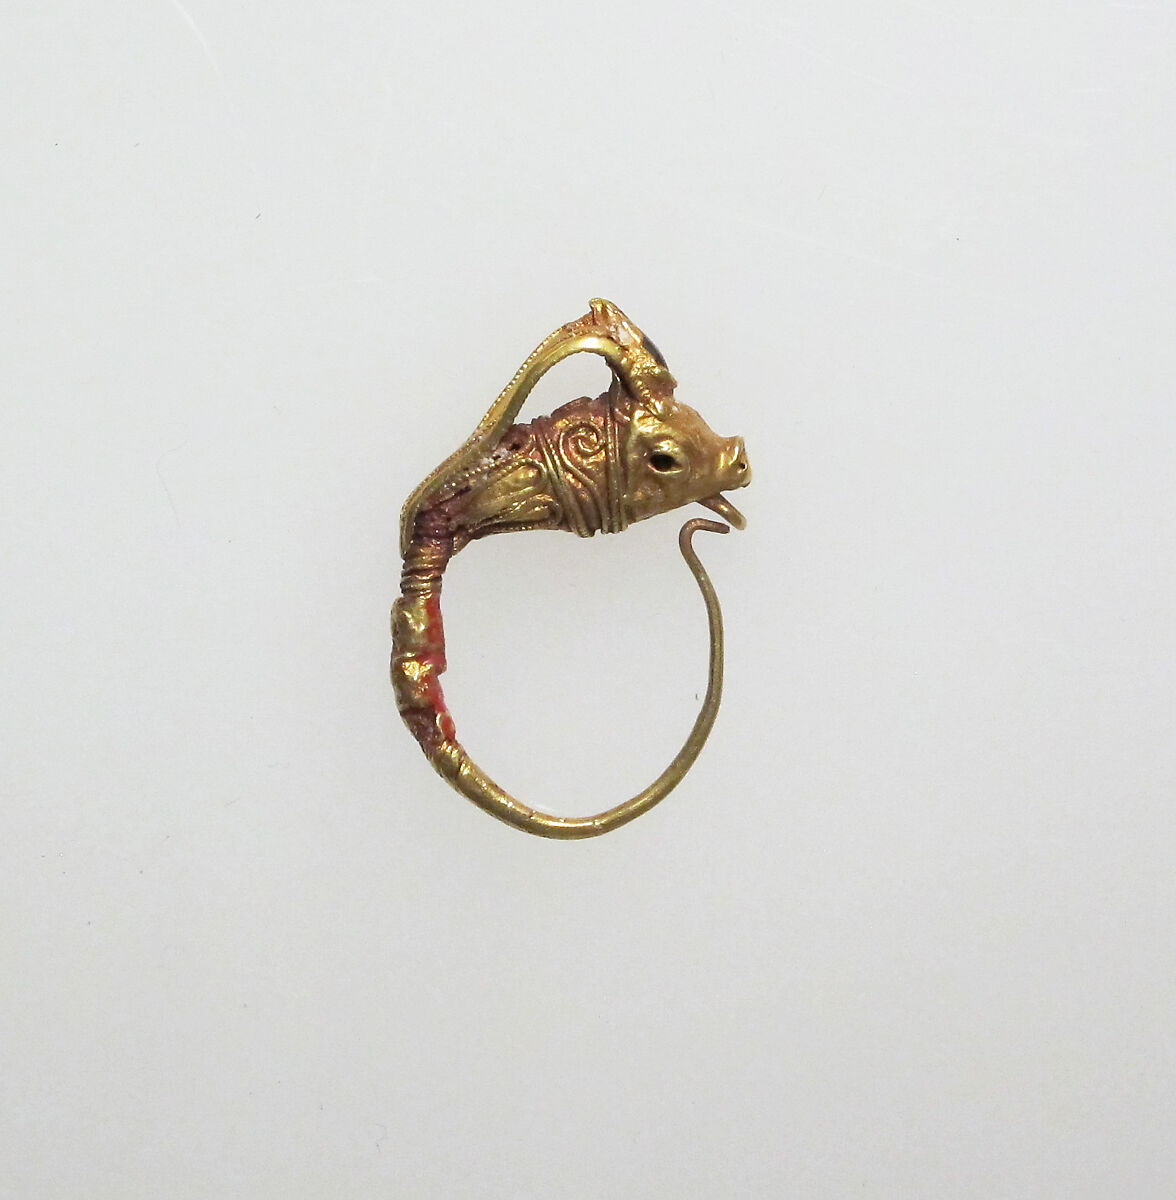 Earring with head of goat, Gold, garnet, Greek 